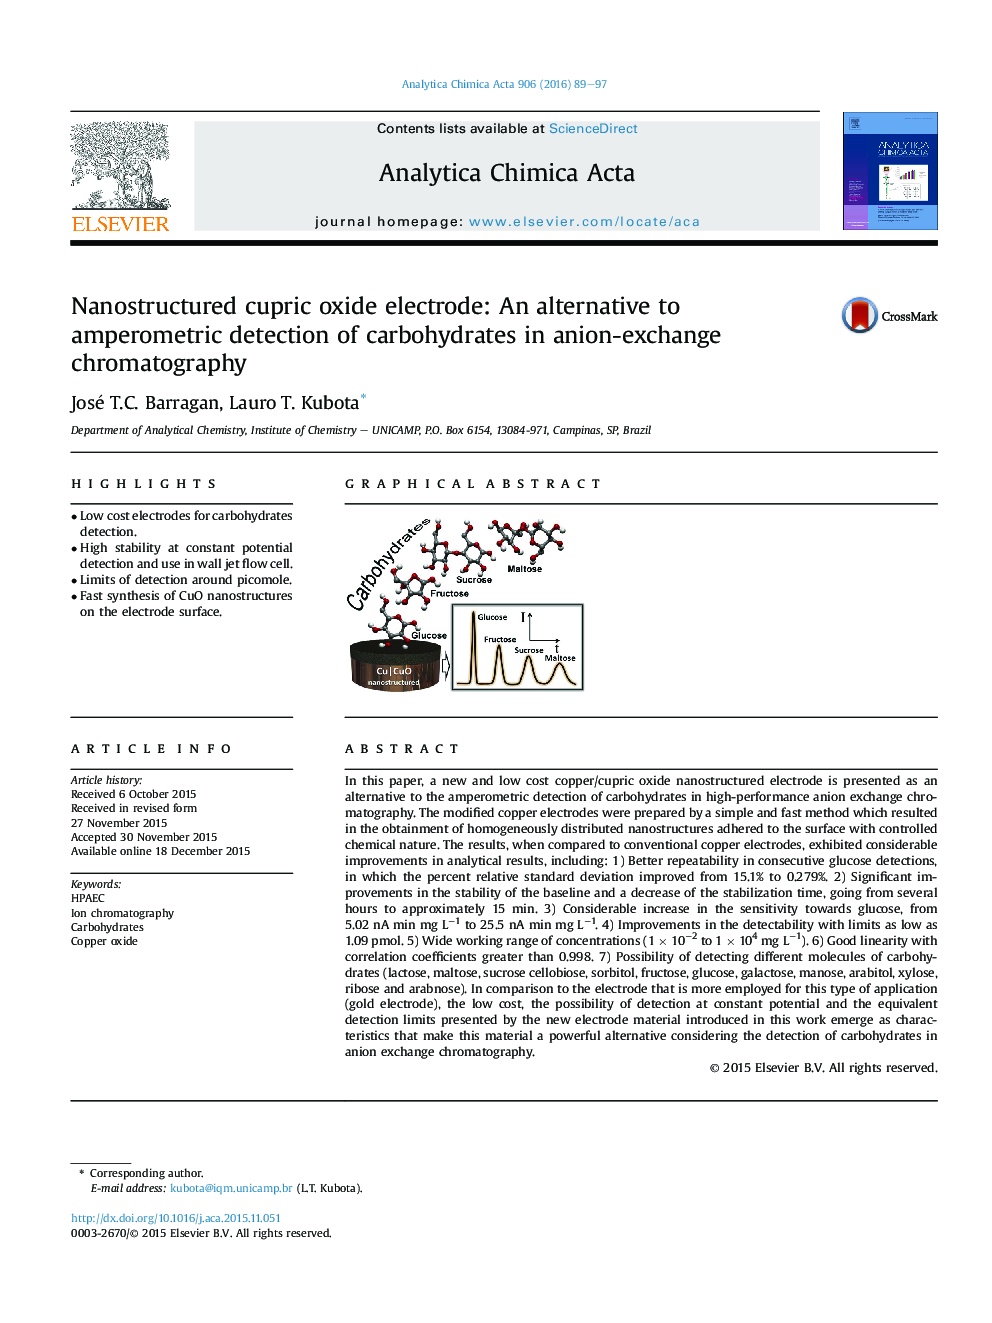 الکترود اکسید مس نیکل ساختاری: جایگزینی برای تشخیص آمپر آن از کربوهیدرات ها در کروماتوگرافی آنیونی تبادل 